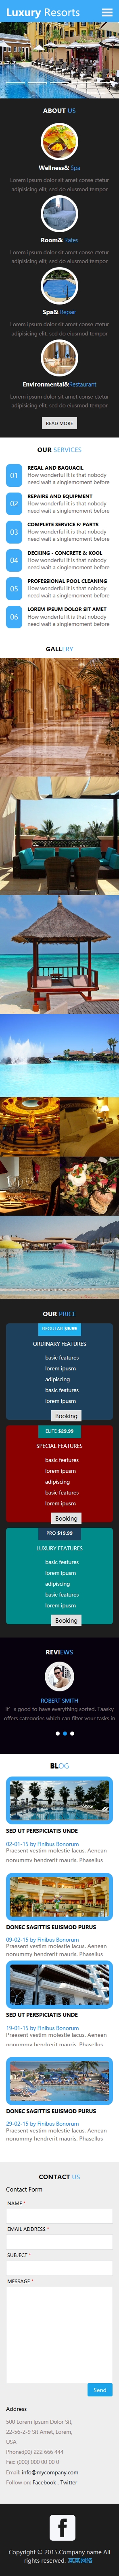 酒店度假类英文网站制作模板手机图片